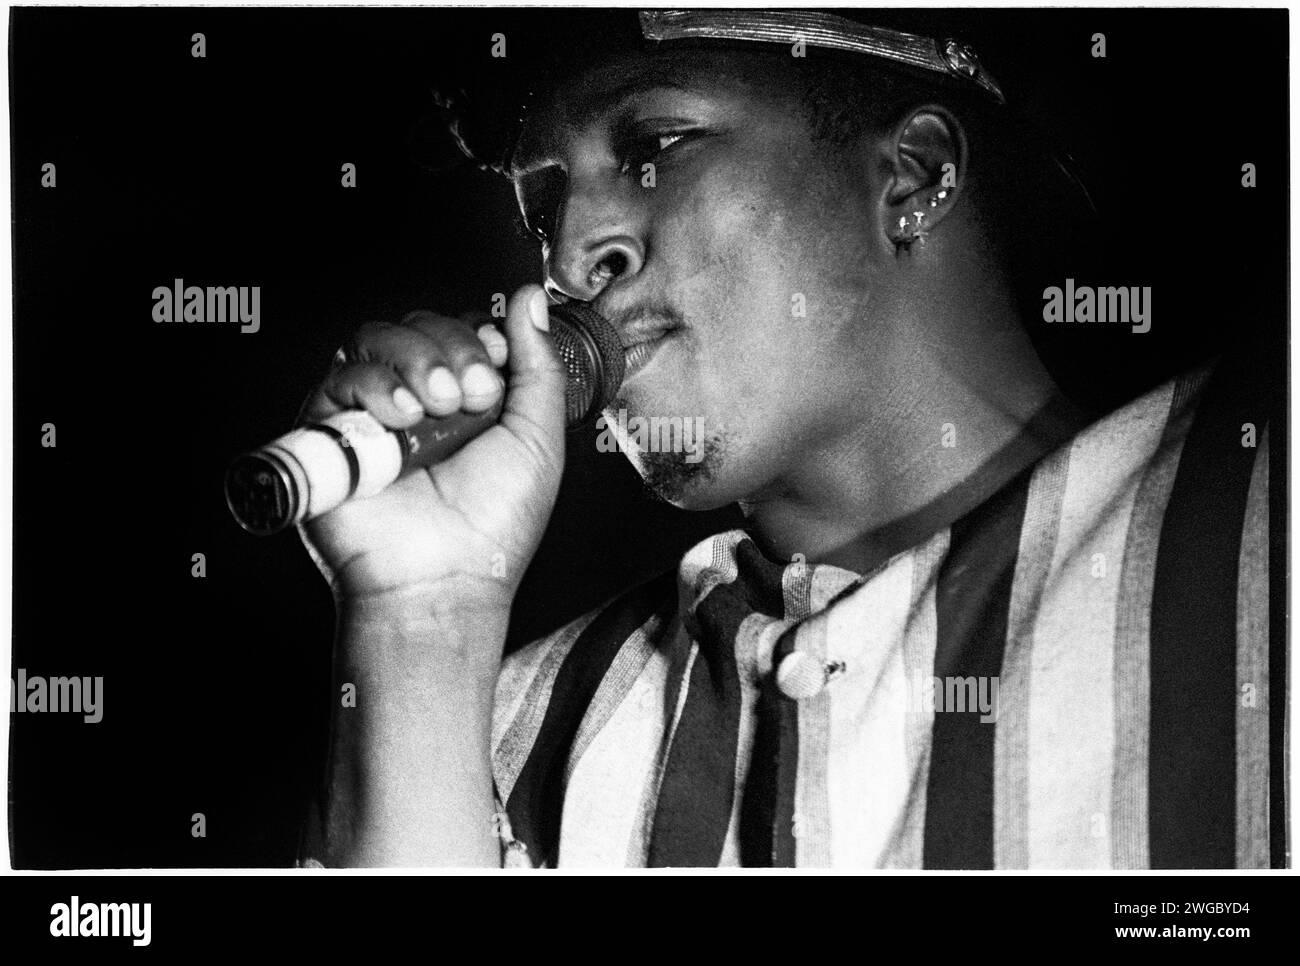 EVERTON BONNER, CHAKA DEMUS & CRINES, 1995: Everton Bonner (Pliers) della band giamaicana Chaka Demus & Pliers che suona al Cardiff Big Weekend Festival on Museum Laws a Cardiff, Galles, Regno Unito il 12 agosto 1995. Foto: Rob Watkins. INFO: Chaka Demus & Pliers, un duo reggae giamaicano formato negli anni '90, ha ottenuto consensi internazionali con successi come "Tease me". La loro infettiva miscela di reggae e dancehall ha mostrato la loro collaborazione carismatica, contribuendo alla popolarità globale della musica giamaicana durante gli anni '90 Foto Stock